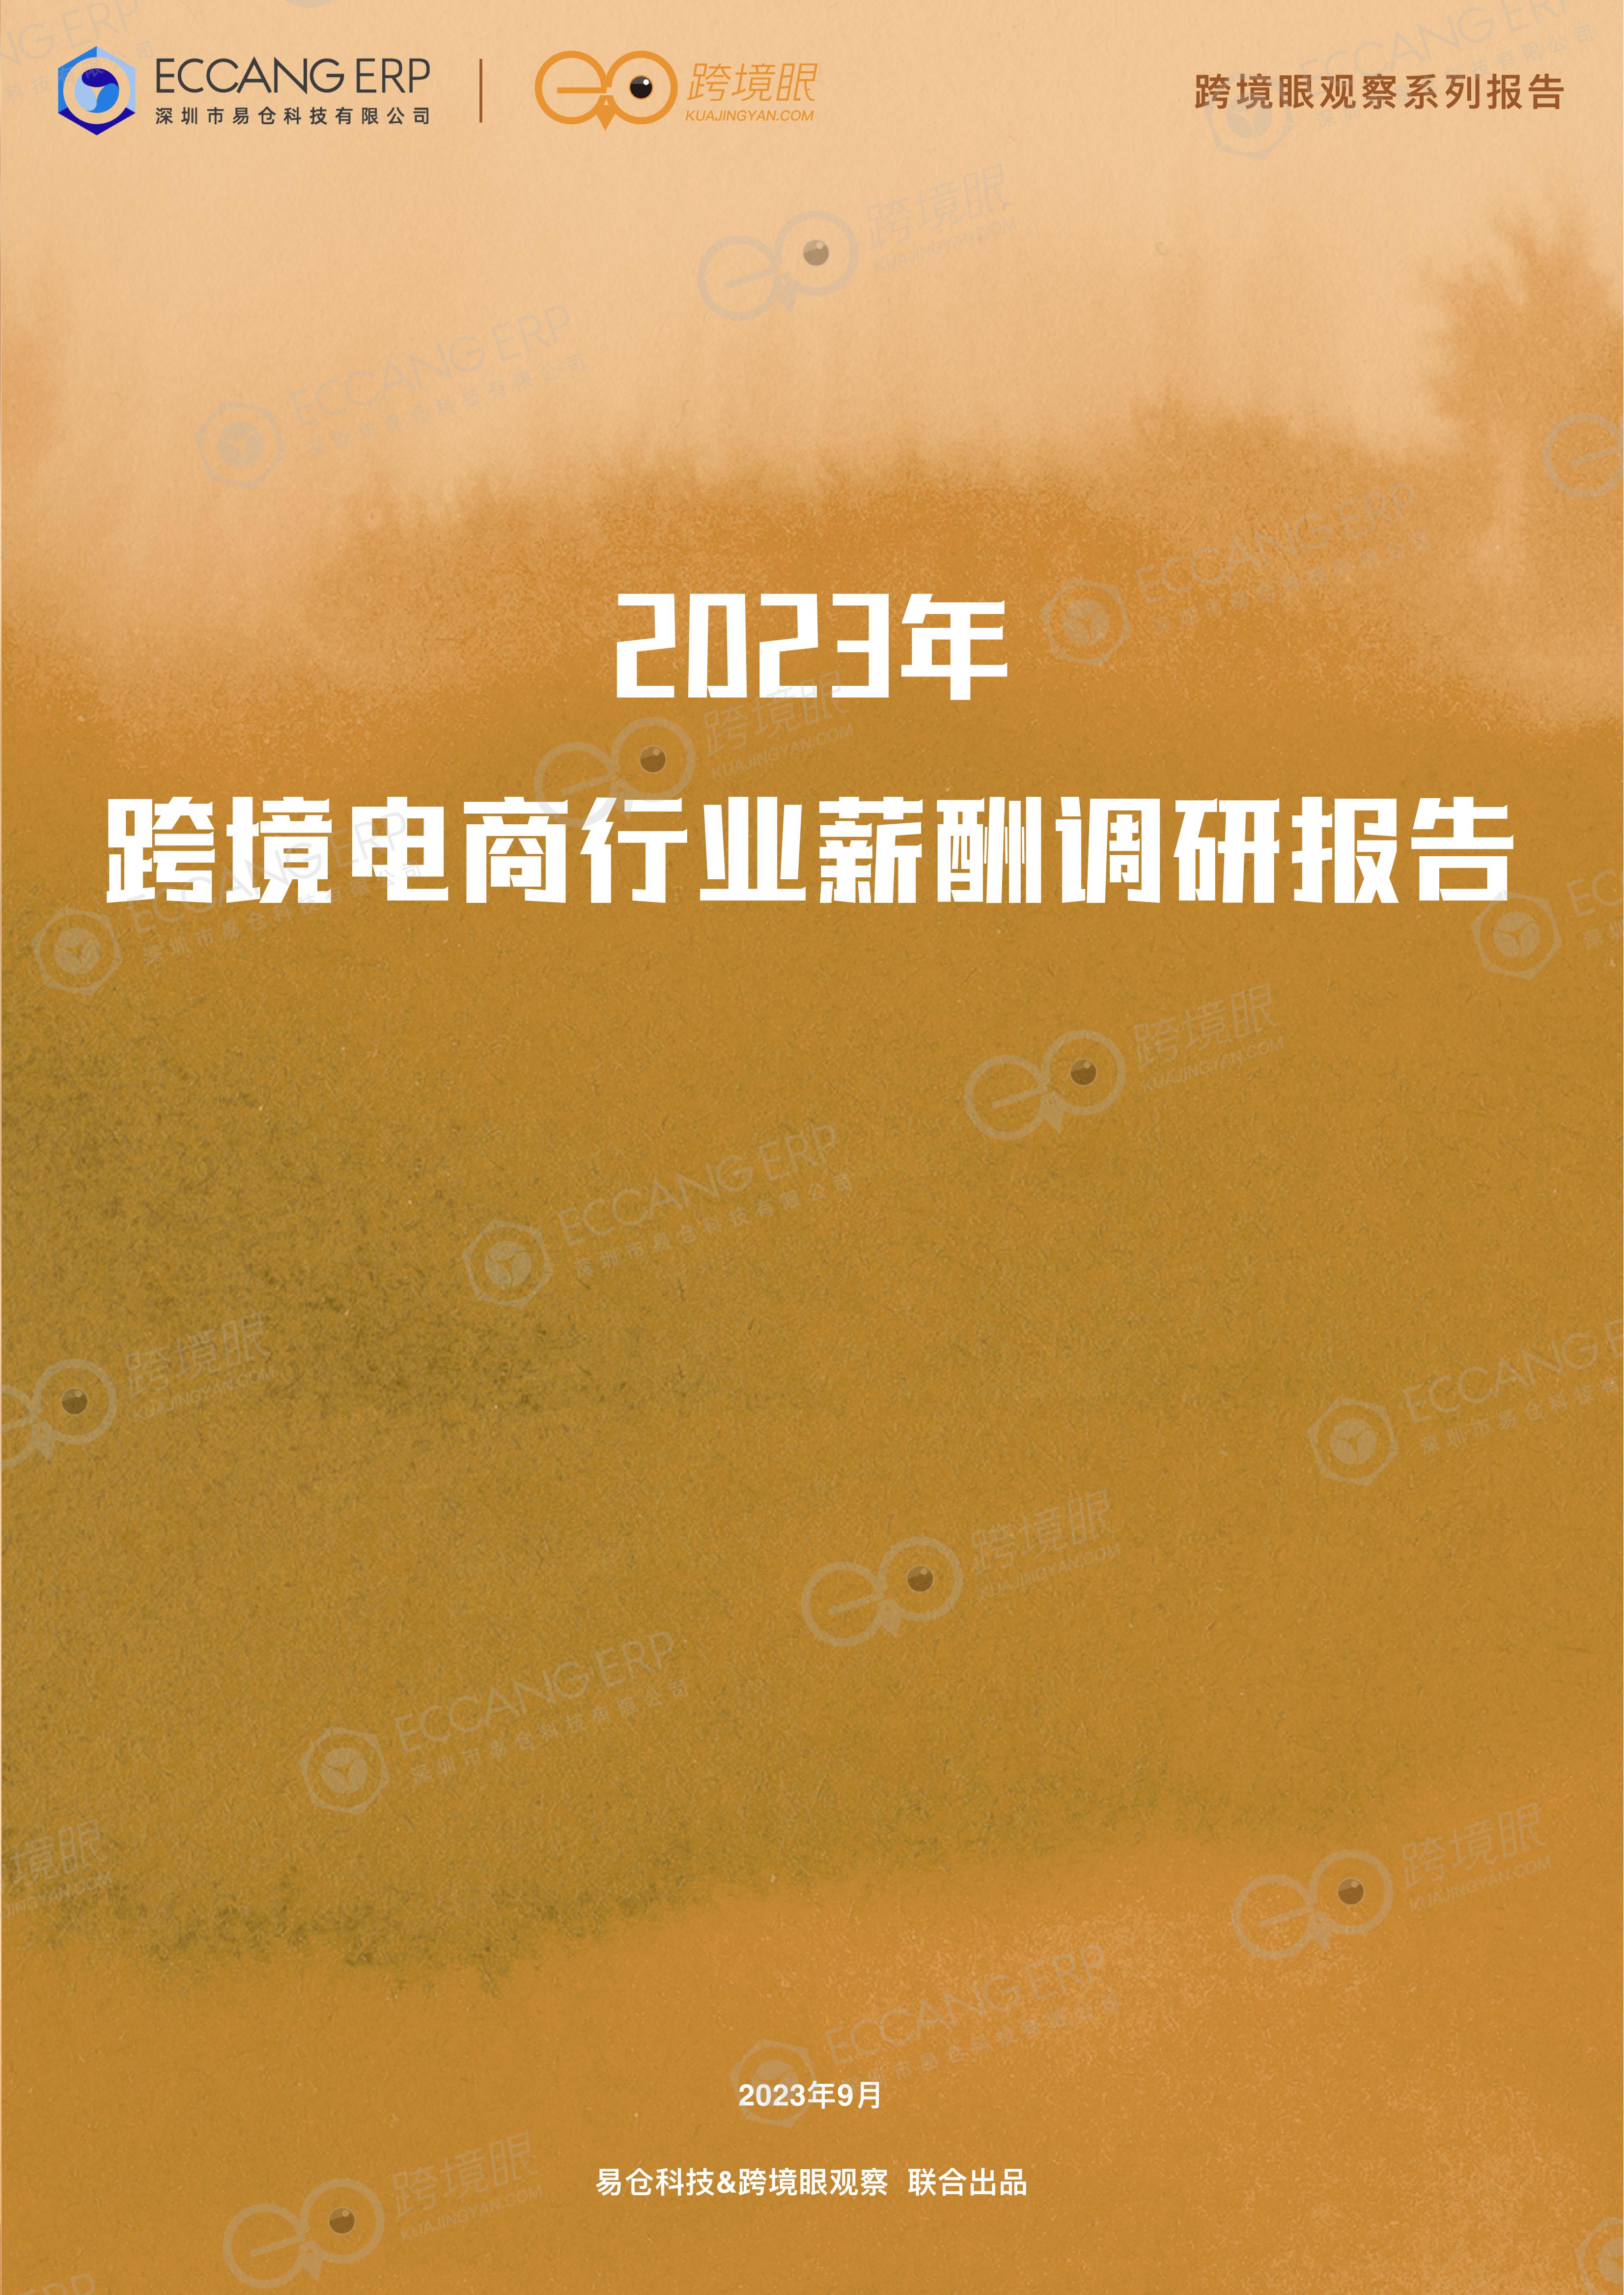 【跨境眼观察系列报告】2023年跨境电商行业薪酬调研报告（2023年9月）_00.jpg